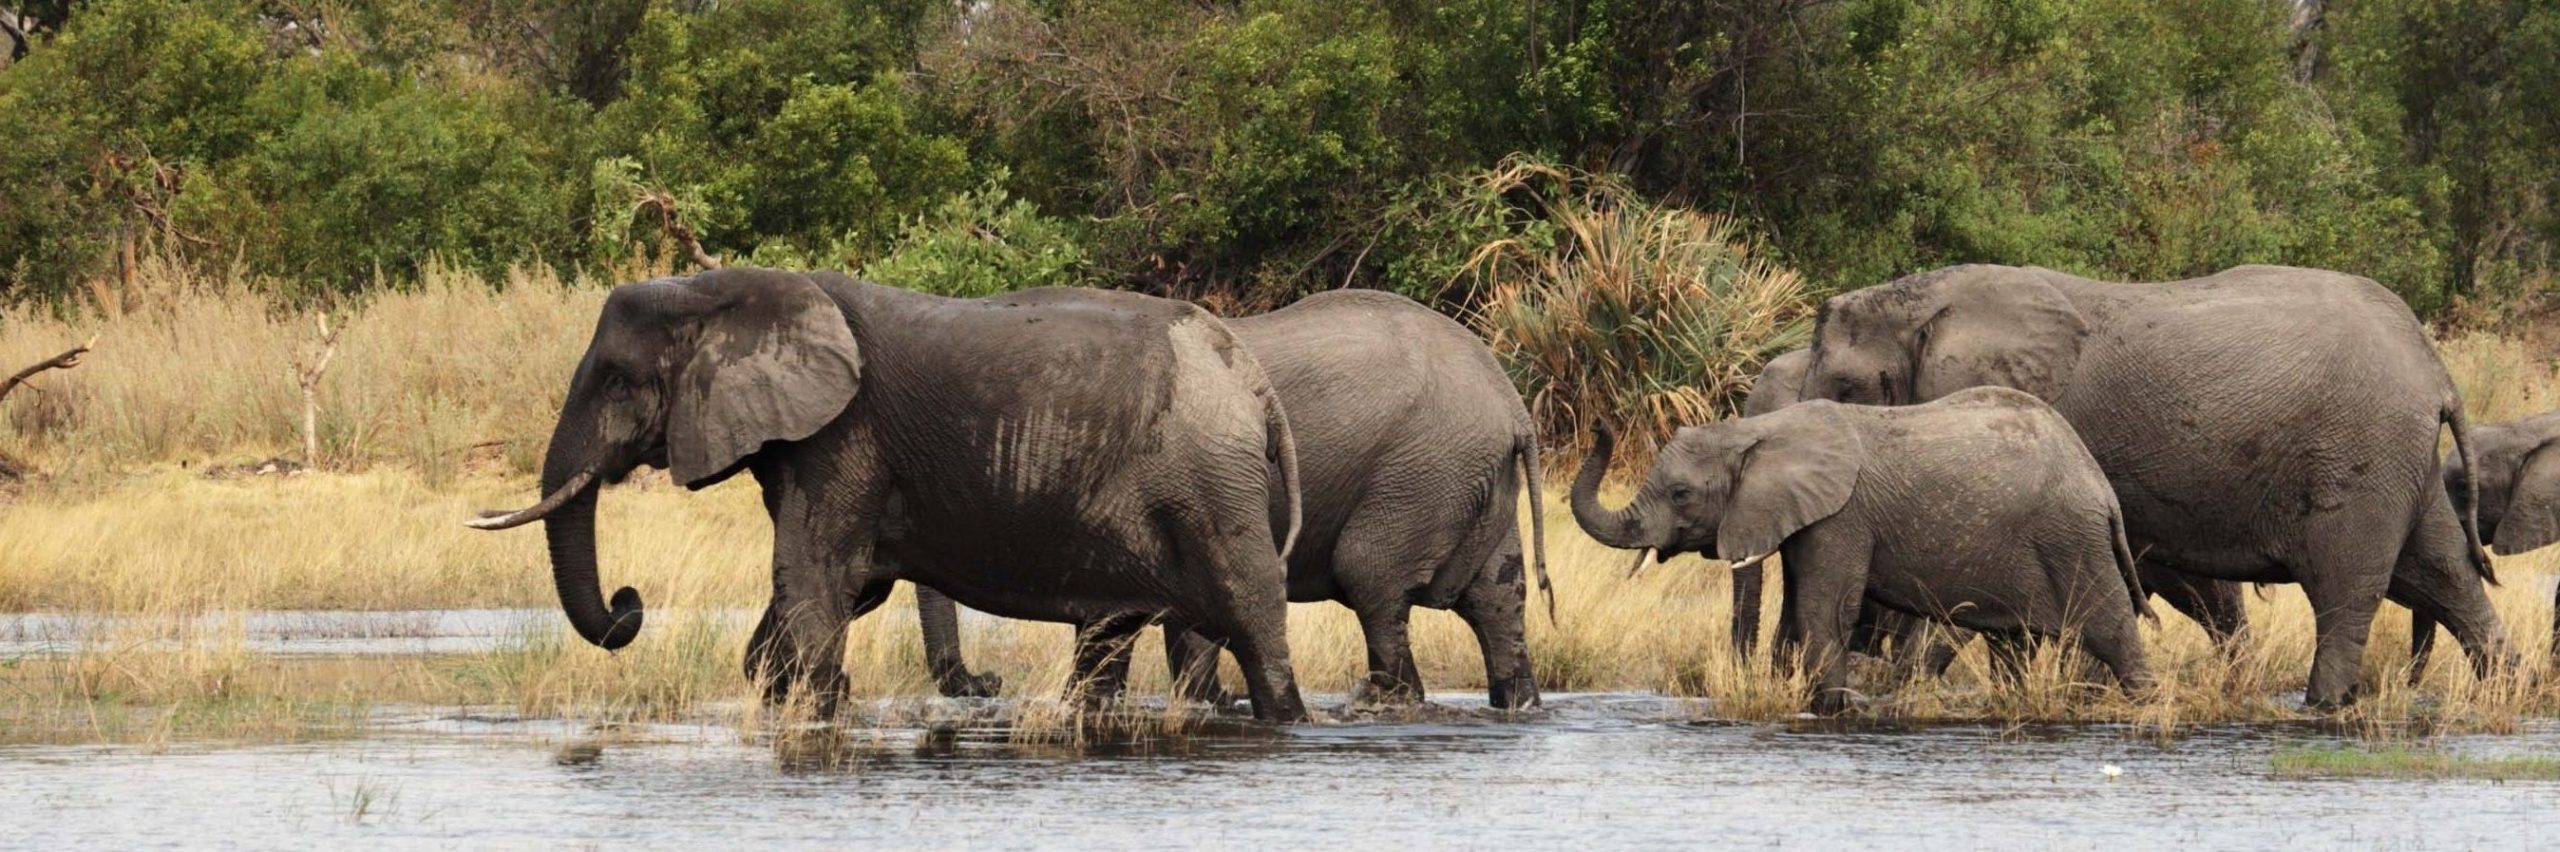 Elephants (Loxodonta africana) in the Okavango Delta, Botswana. - Image